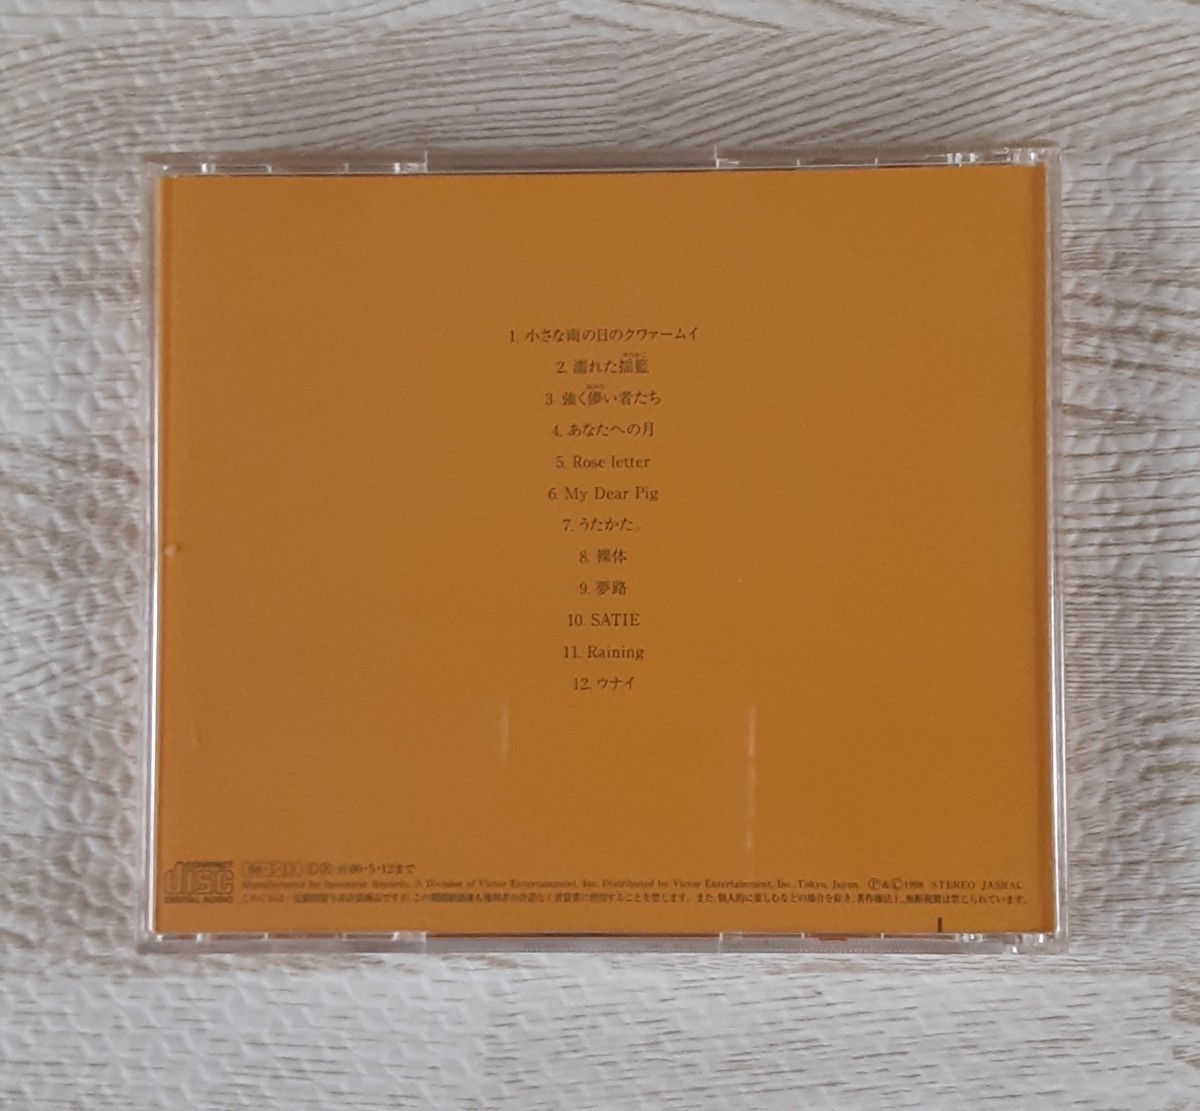 Cocco クムイウタ 1998 こっこ 音楽 CD アルバム コレクション_画像2